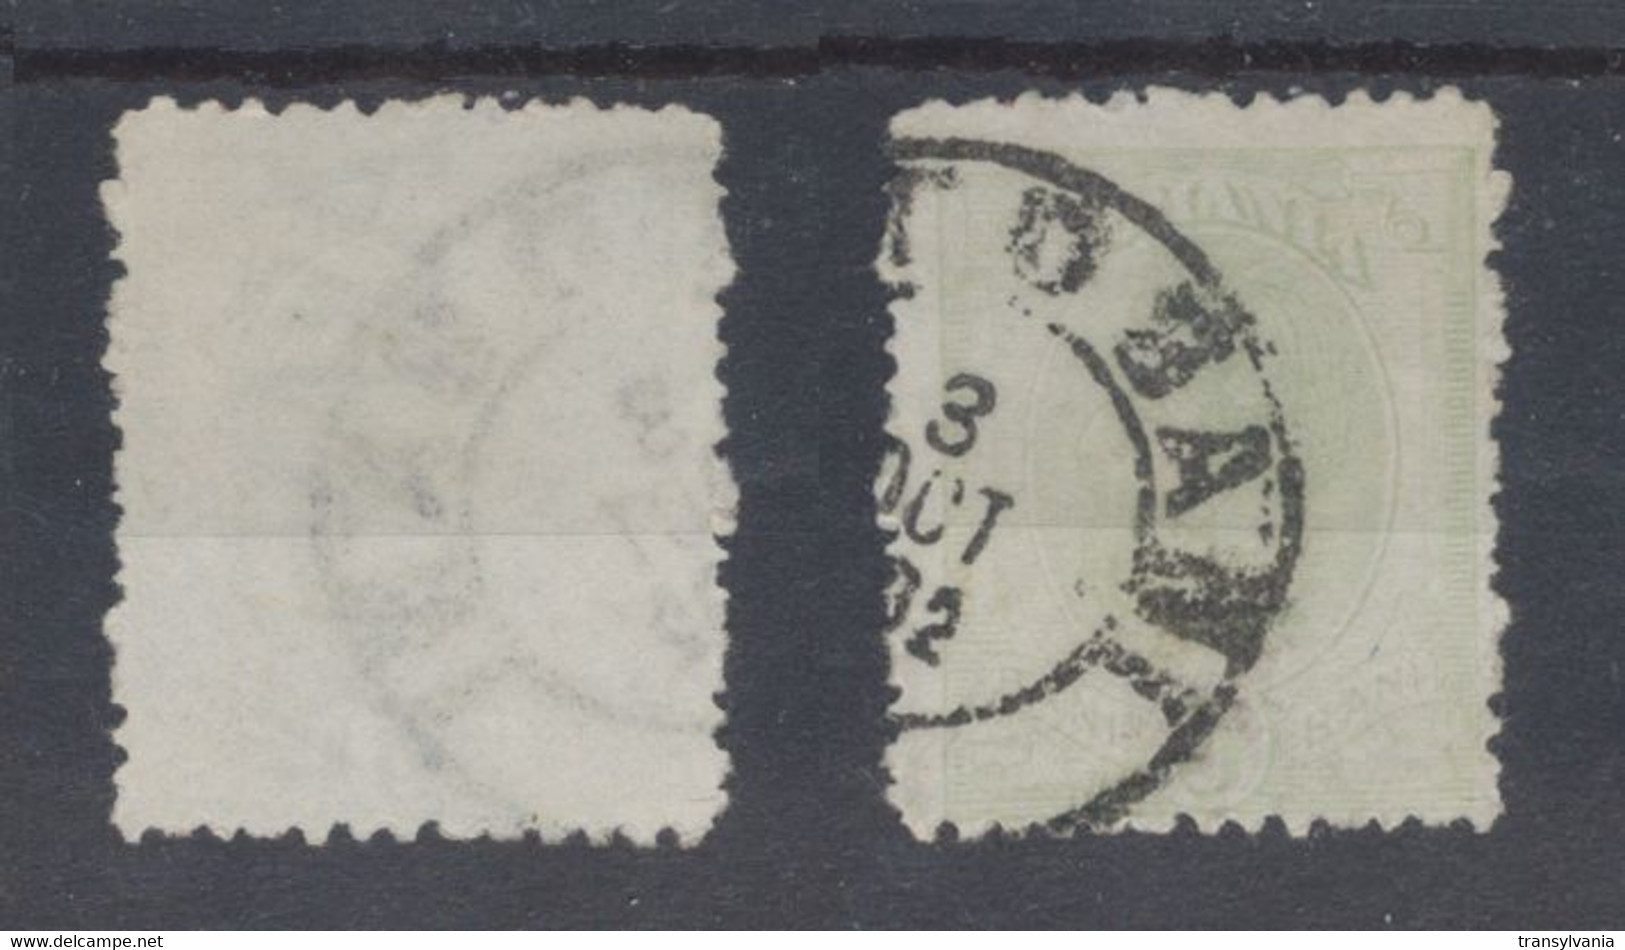 Romania 1900 Wheat Ear Issue 5 Bani Used Stamp With Scarce JOHANNOT Watermark - Variétés Et Curiosités